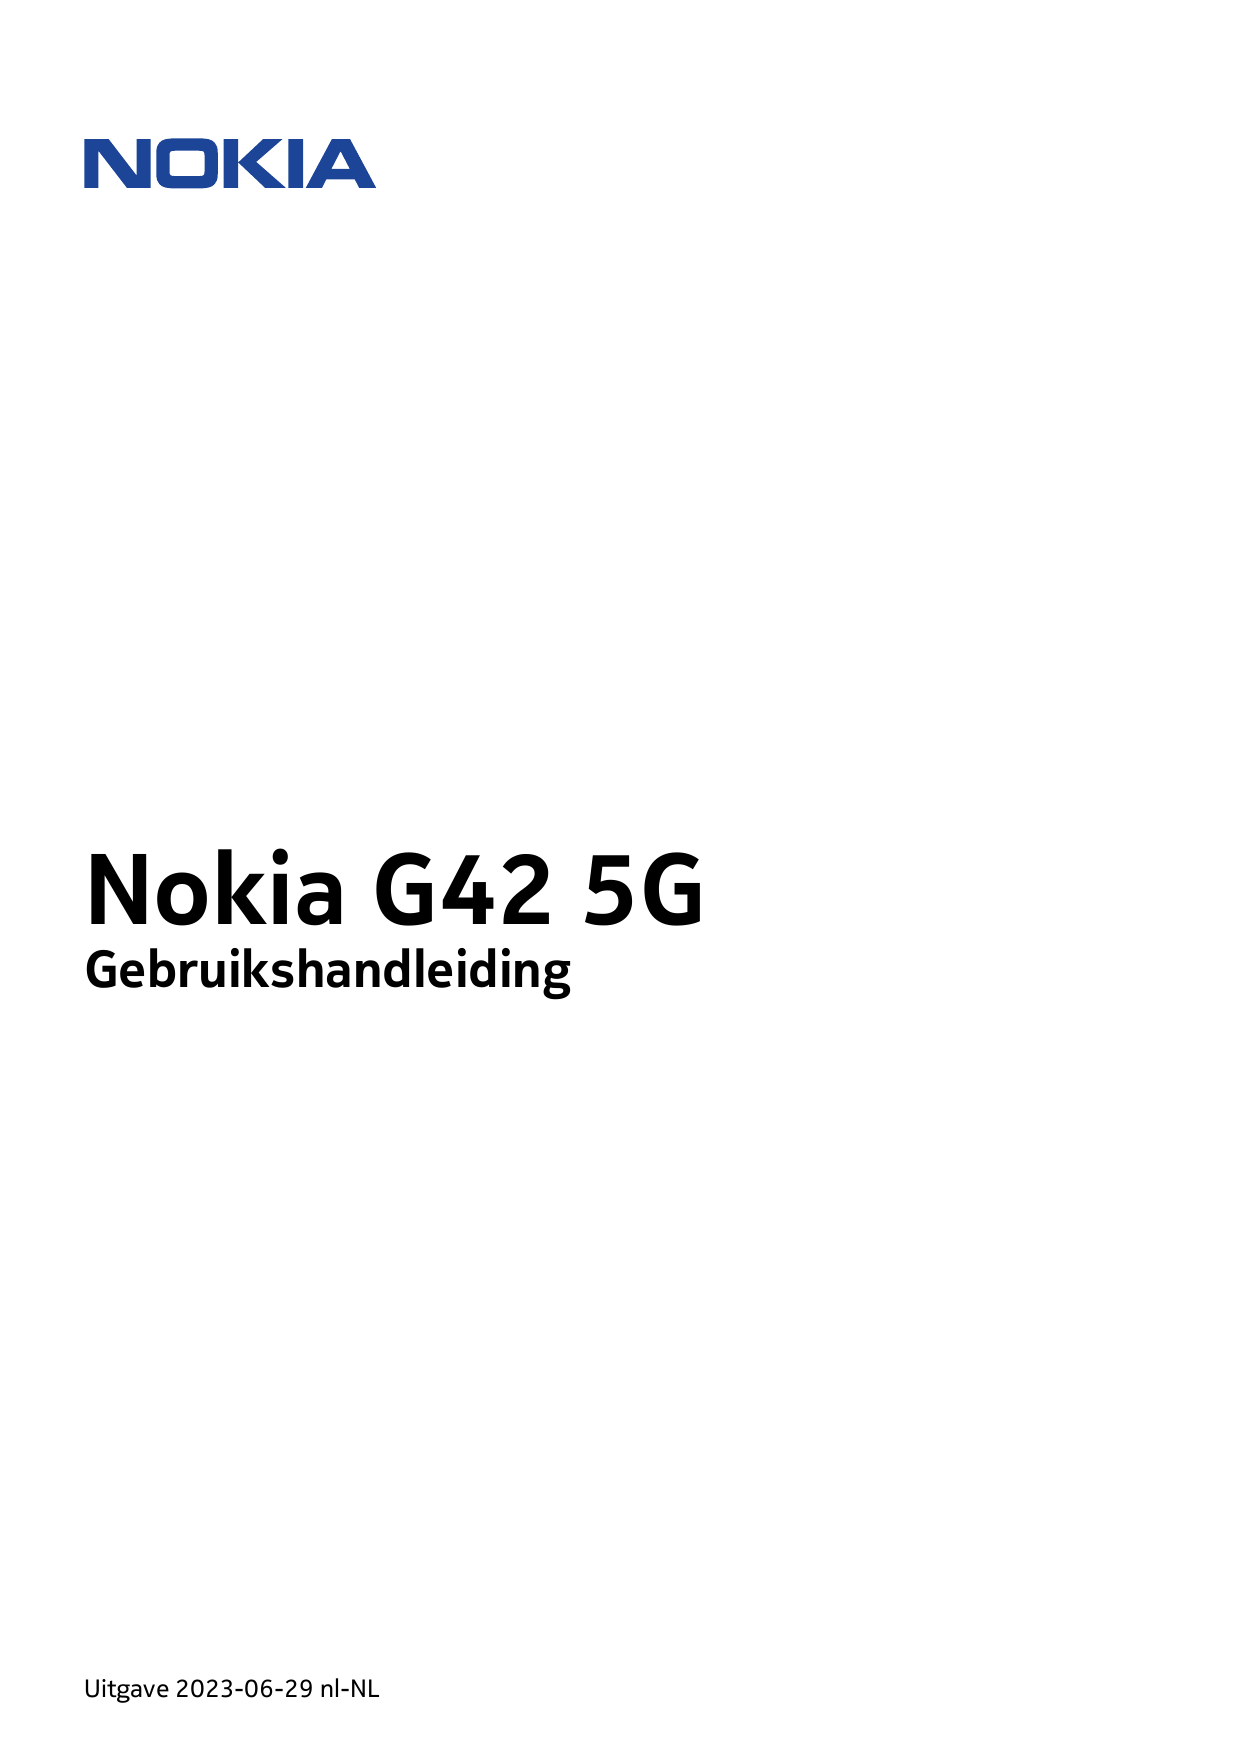 Nokia G42 5GGebruikshandleidingUitgave 2023-06-29 nl-NL